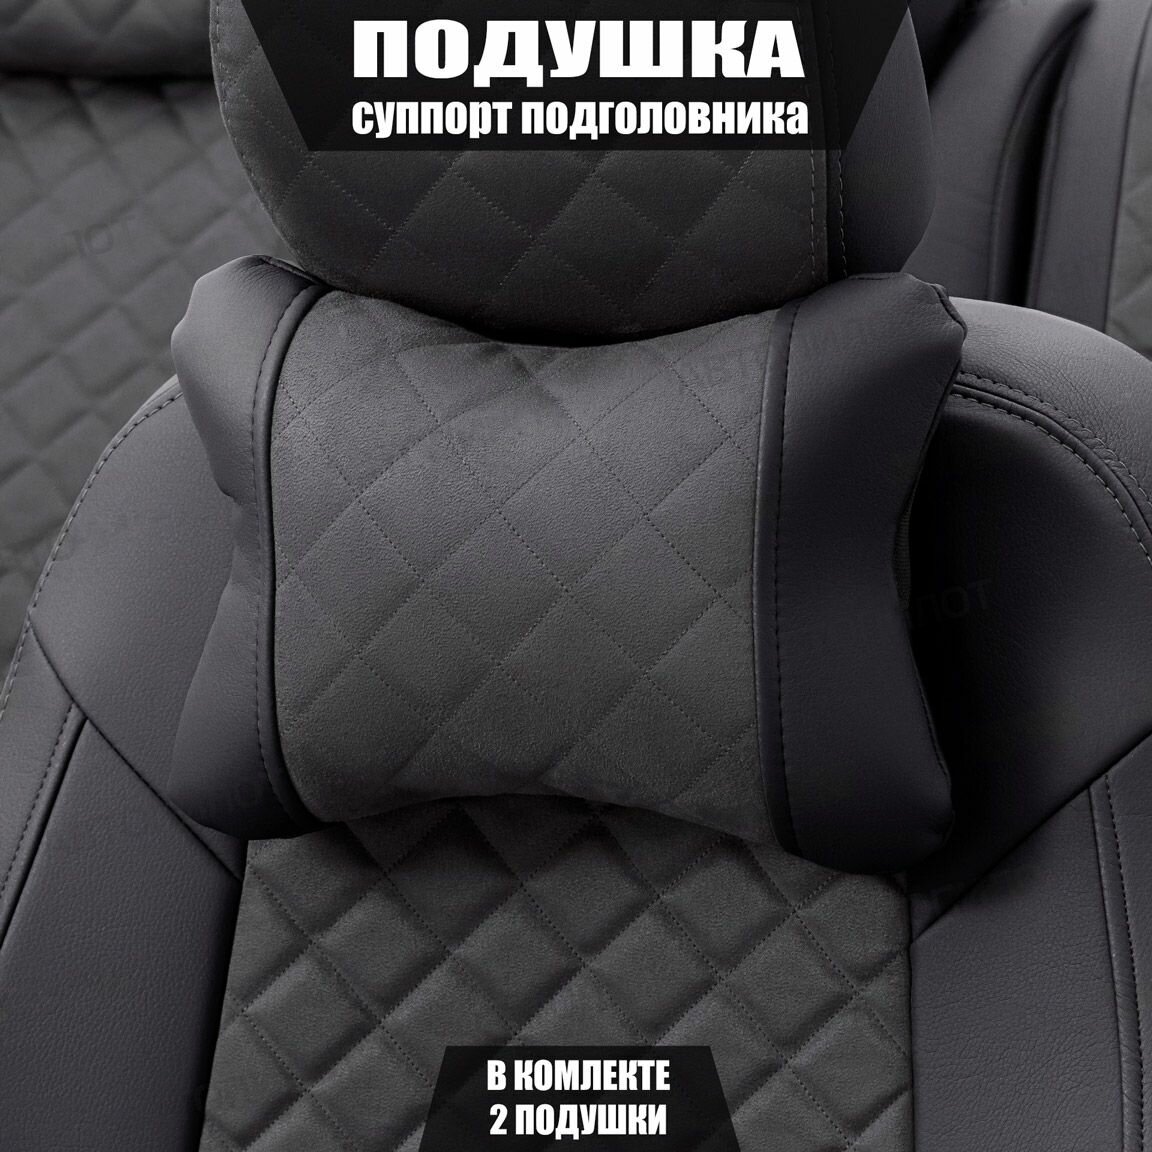 Подушки под шею (суппорт подголовника) для Шевроле Ланос (2002 - 2009) седан / Chevrolet Lanos, Ромб, Алькантара, 2 подушки, Черный и темно-серый